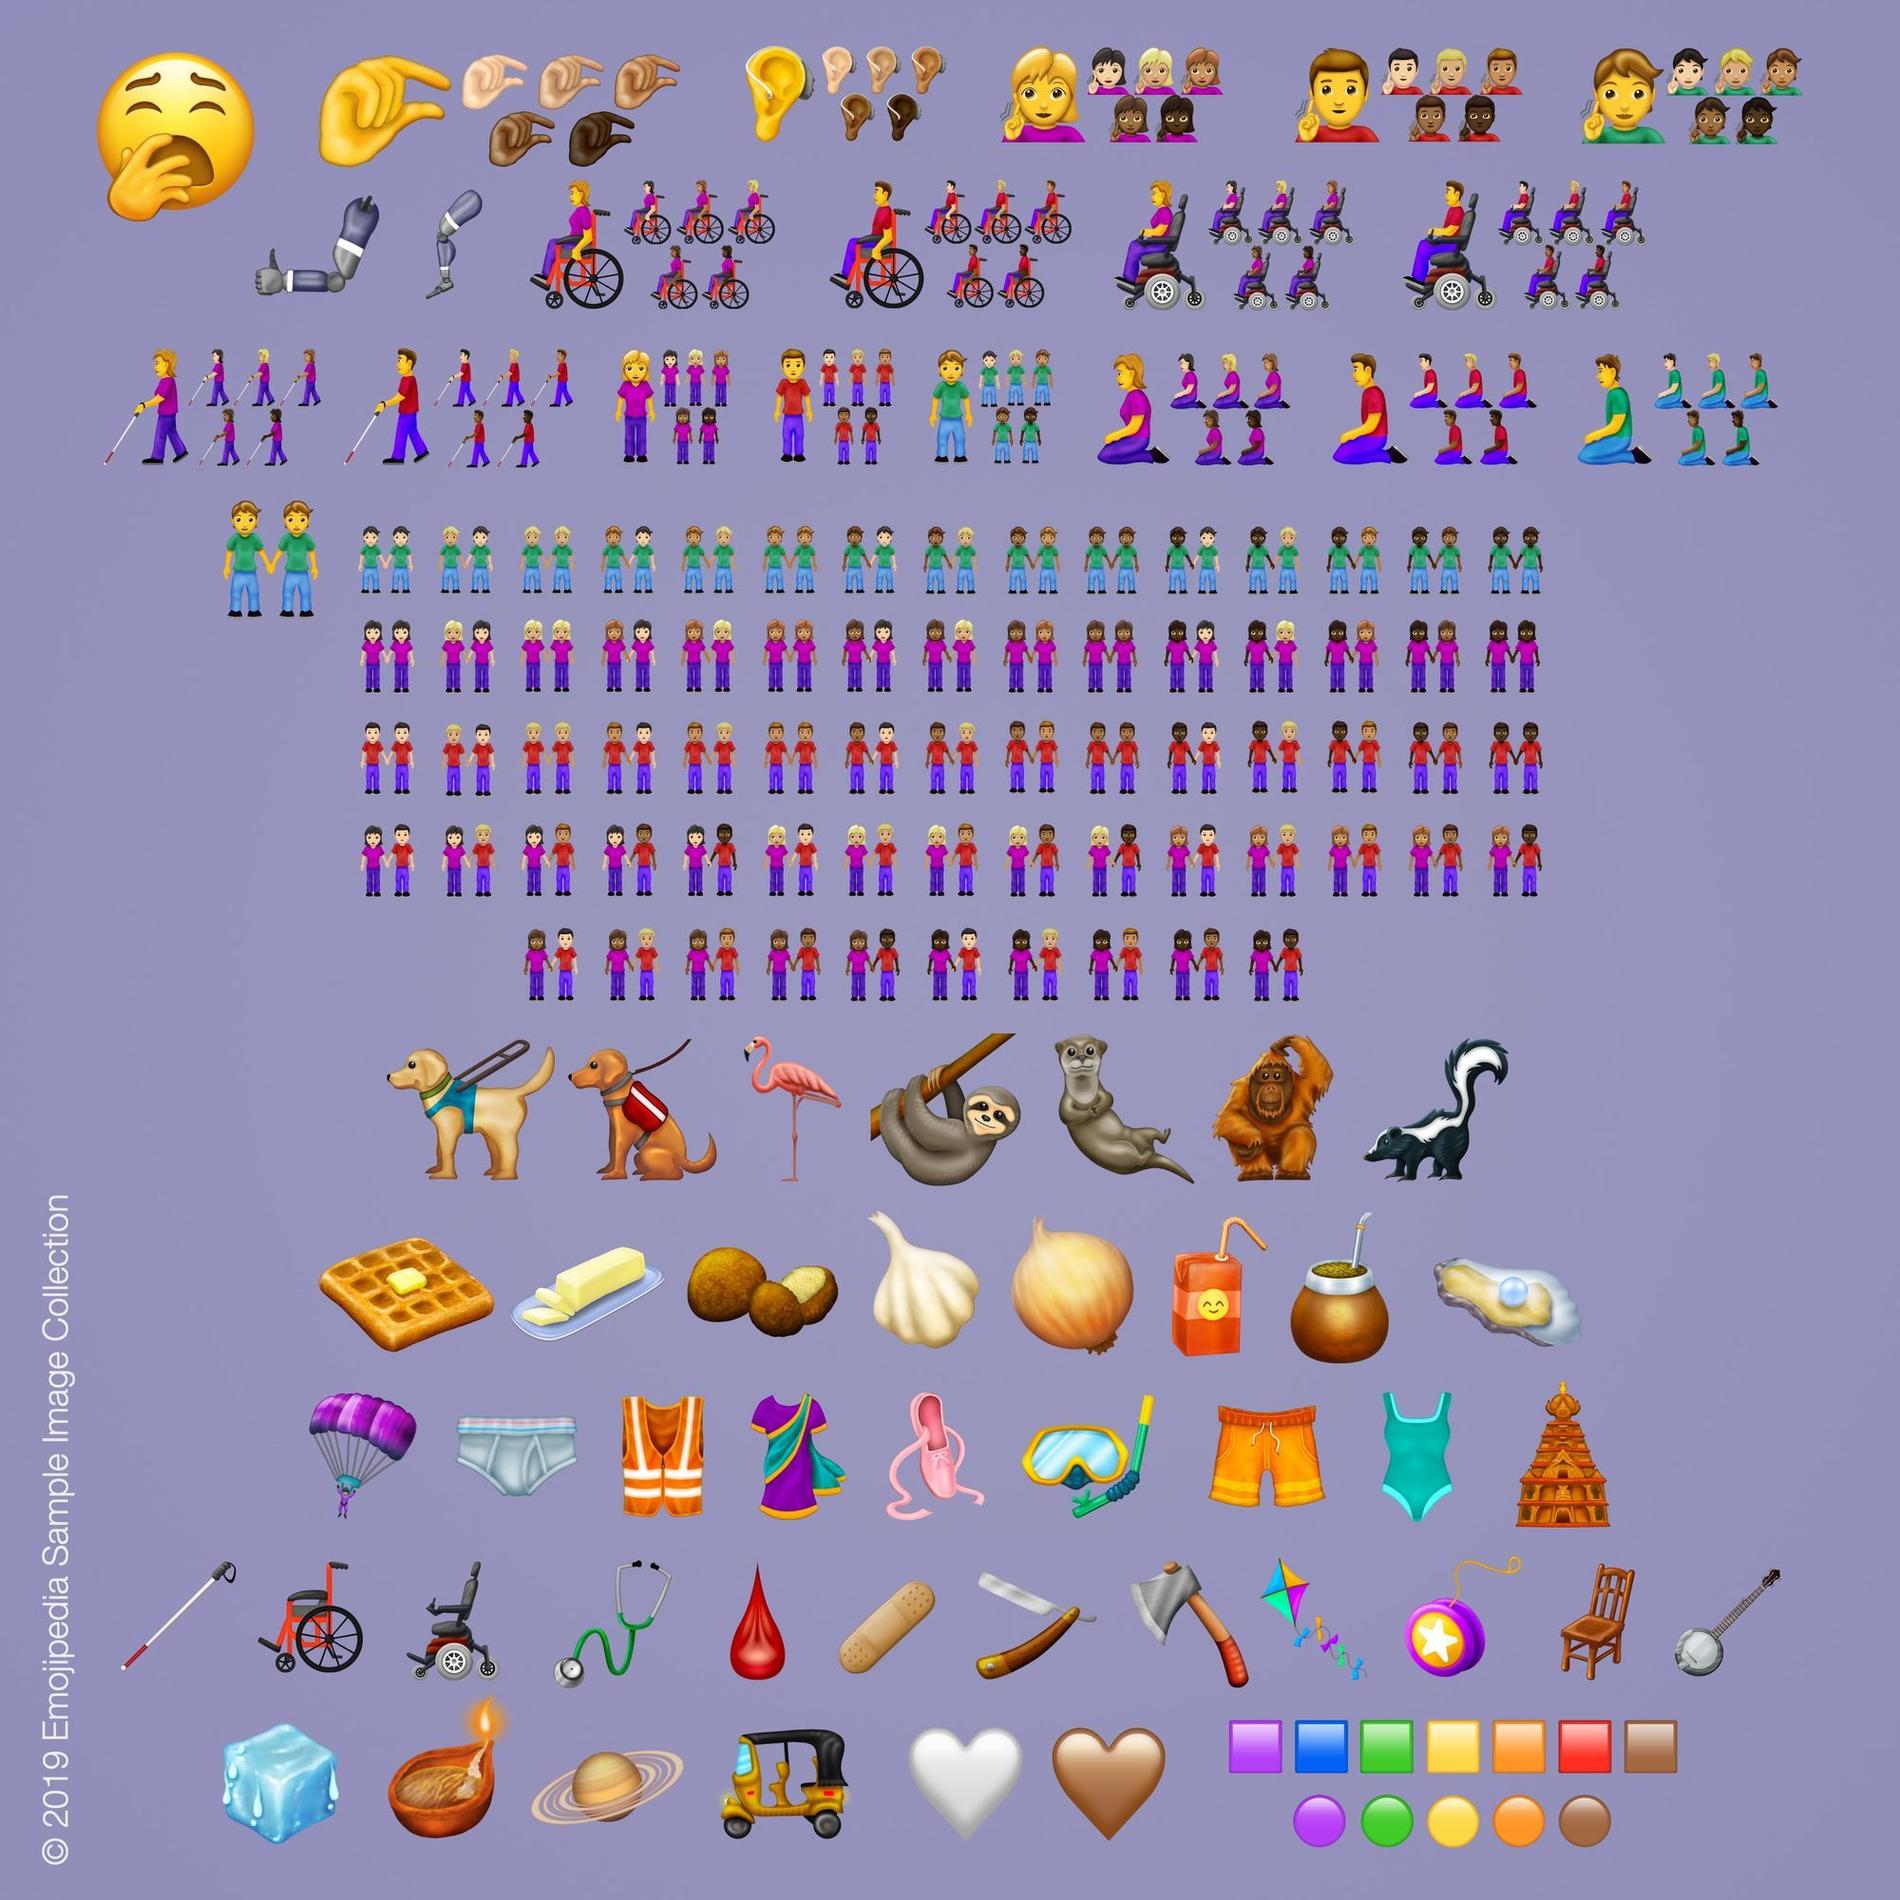 59 nya emojis kommer under 2019 med totalt 230 versioner.